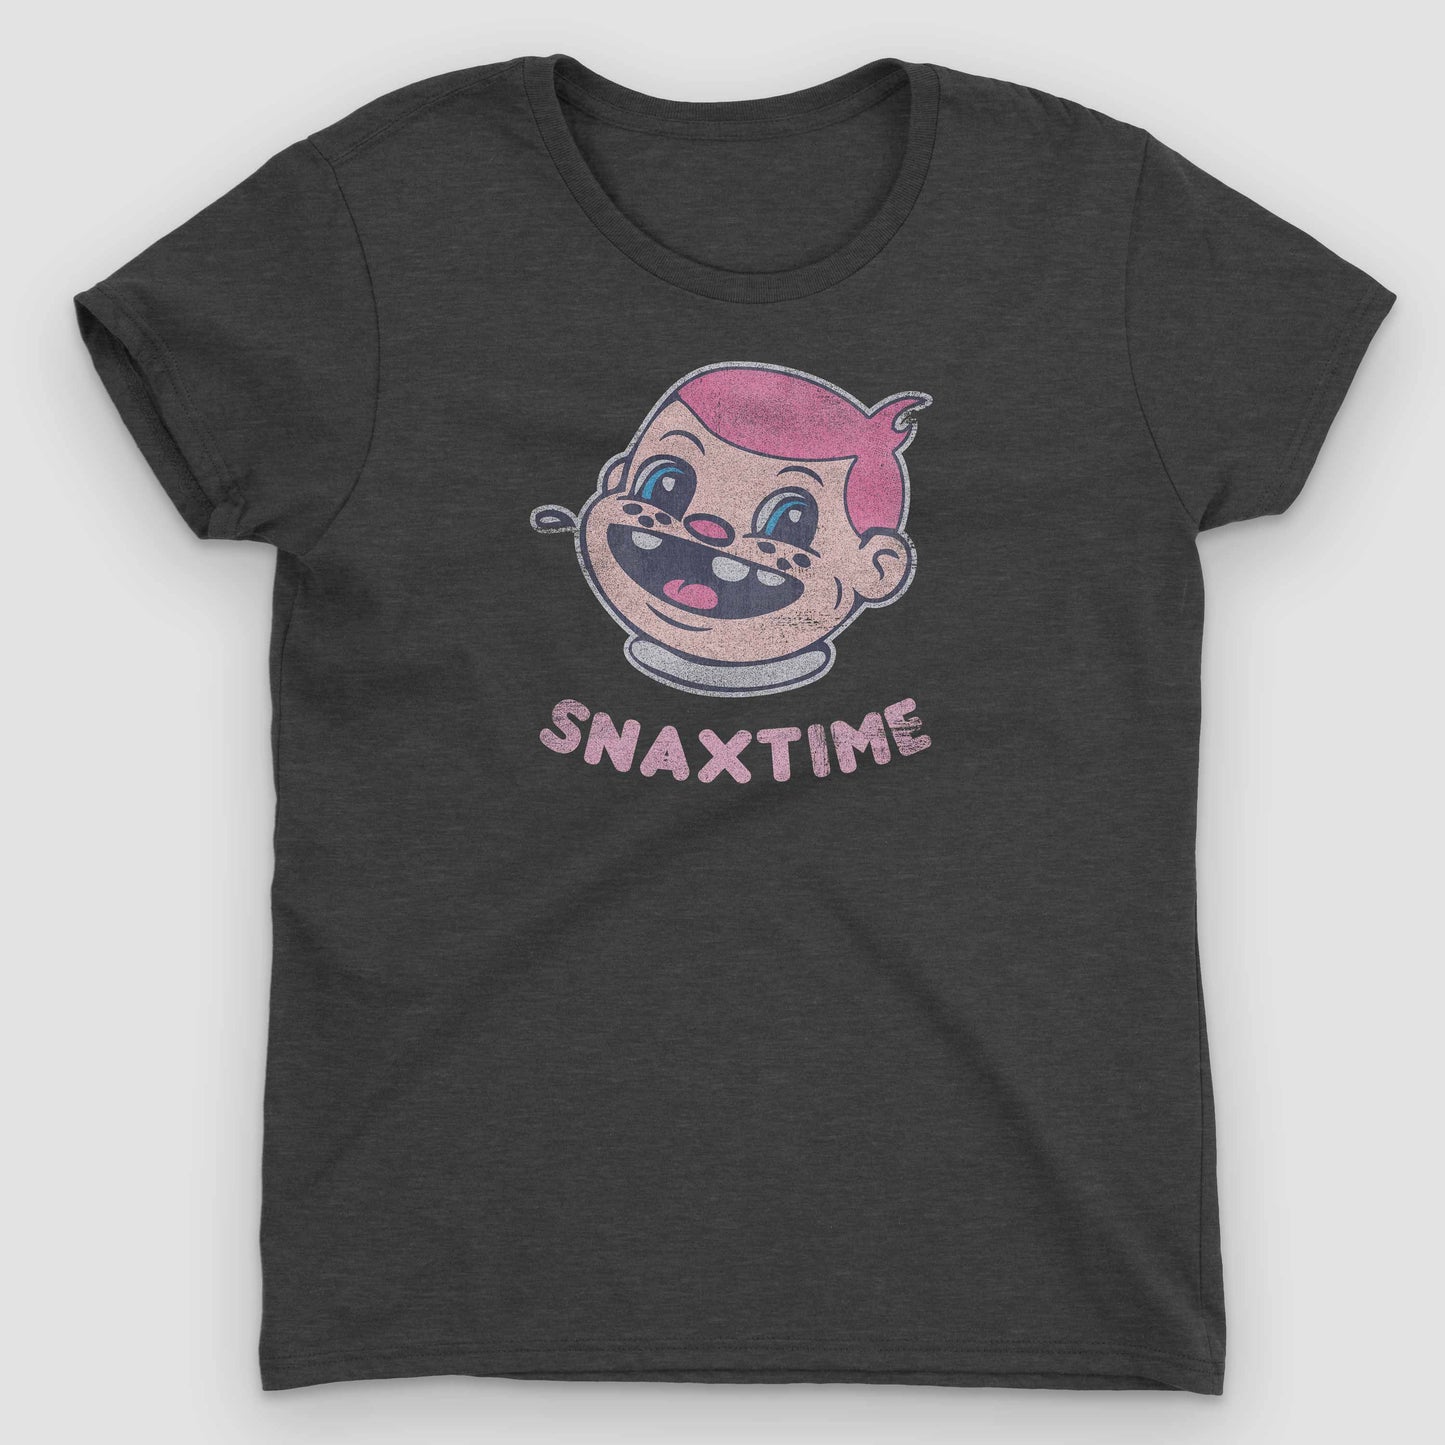 Heather Dark Grey Snaxtime Original Women's Graphic T-Shirt by Snaxtime